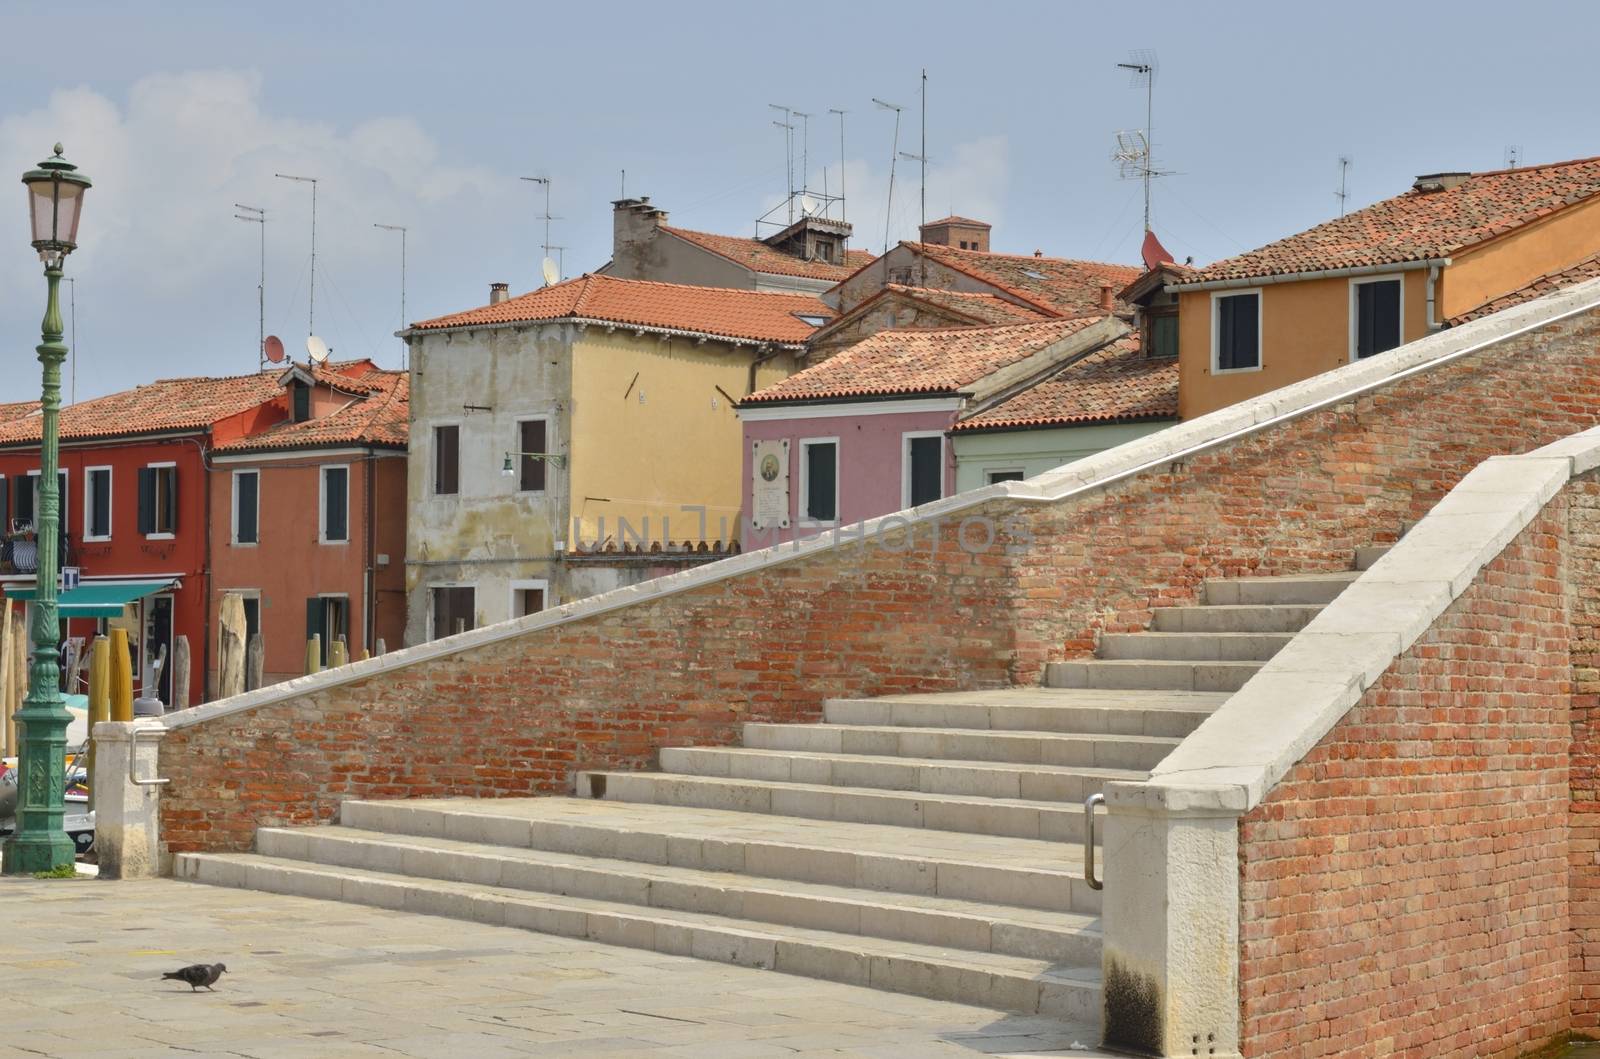 Brick bridge in Murano by monysasi